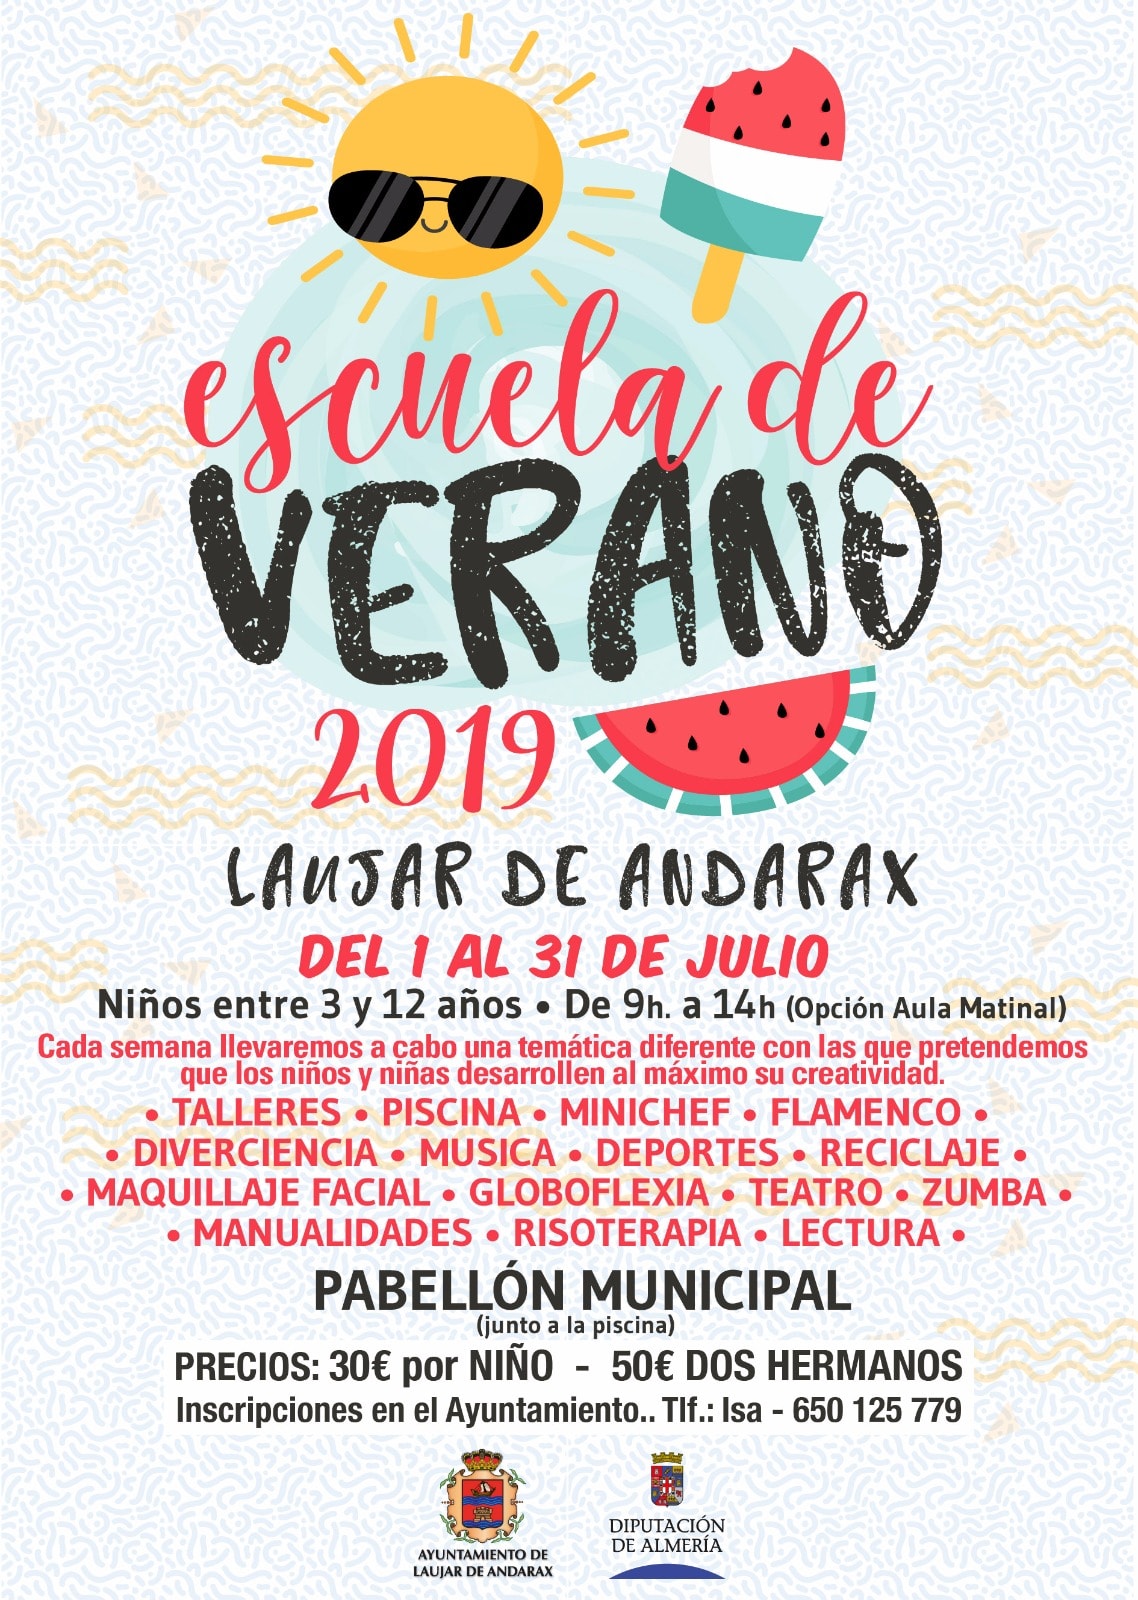 Cartel de la Escuela de Verano 2019 en Laujar de Andarax